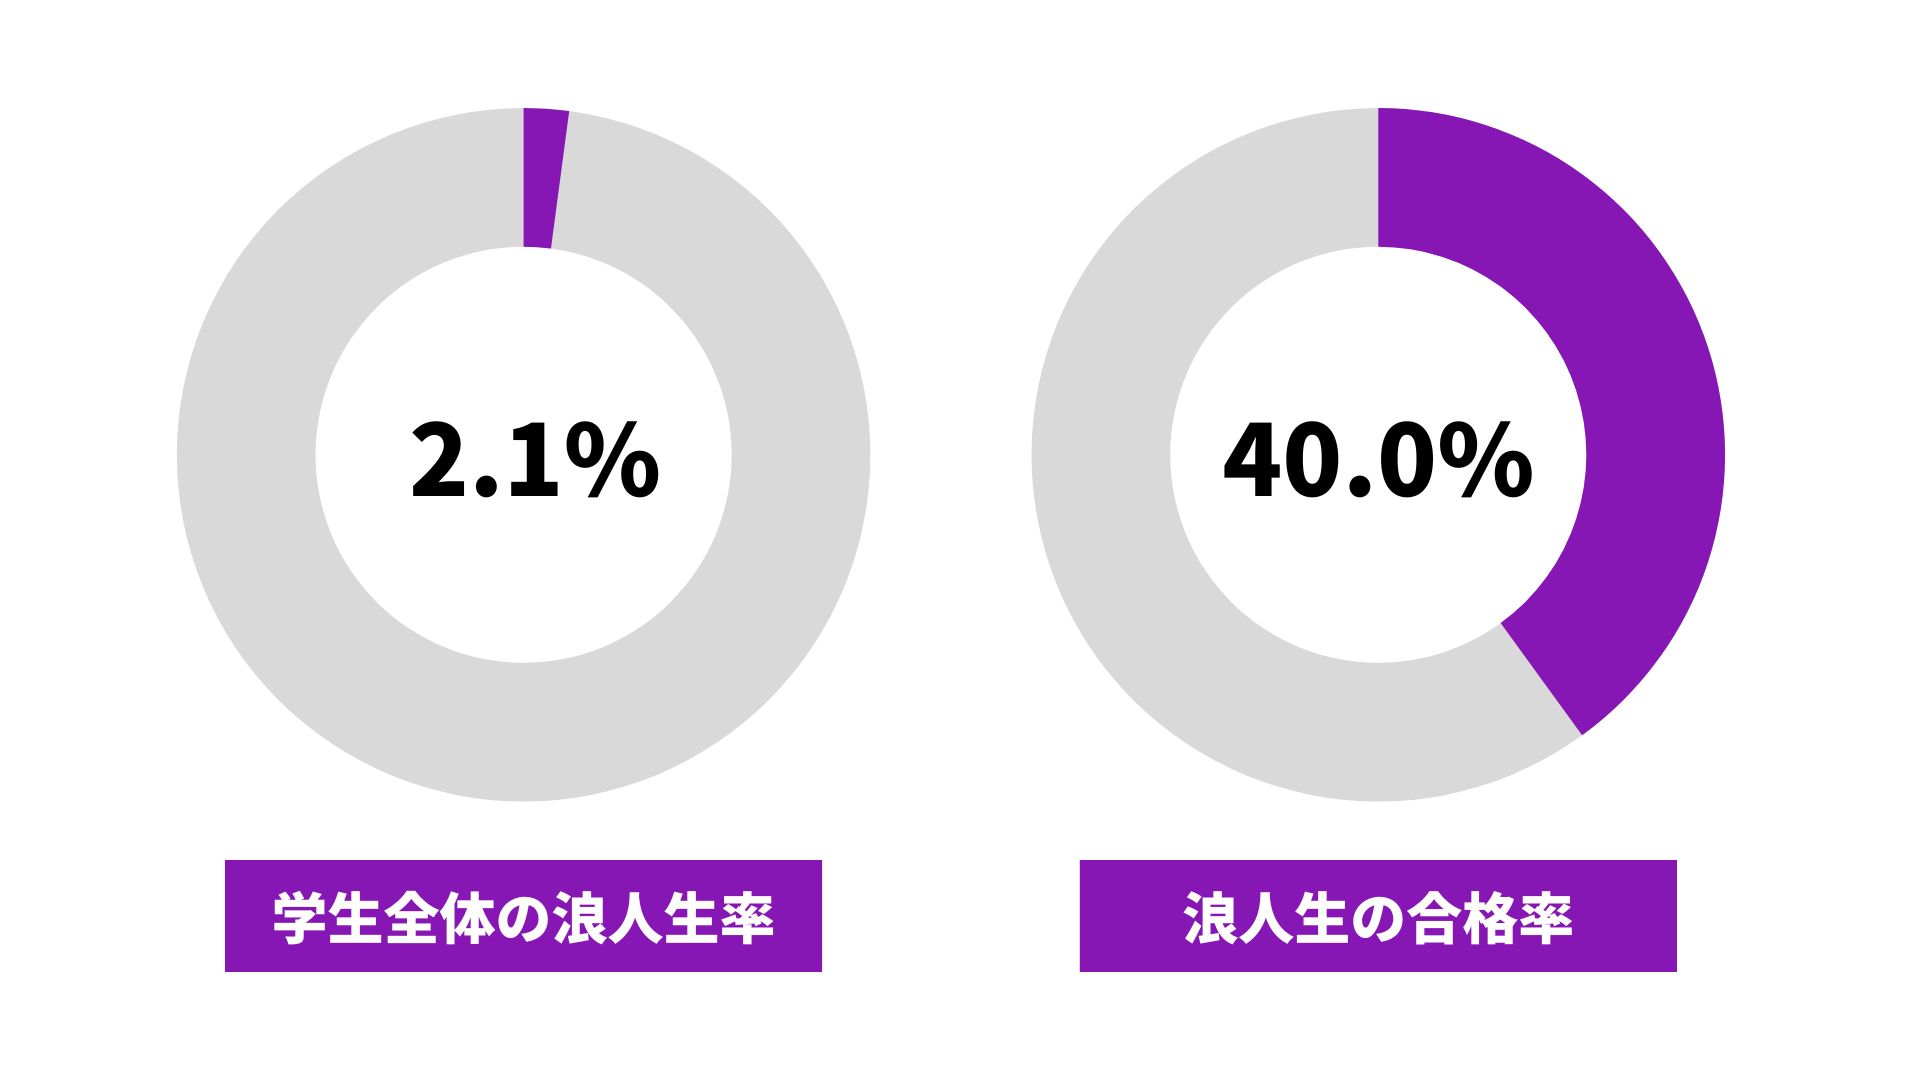 京都教育大学の浪人生の割合